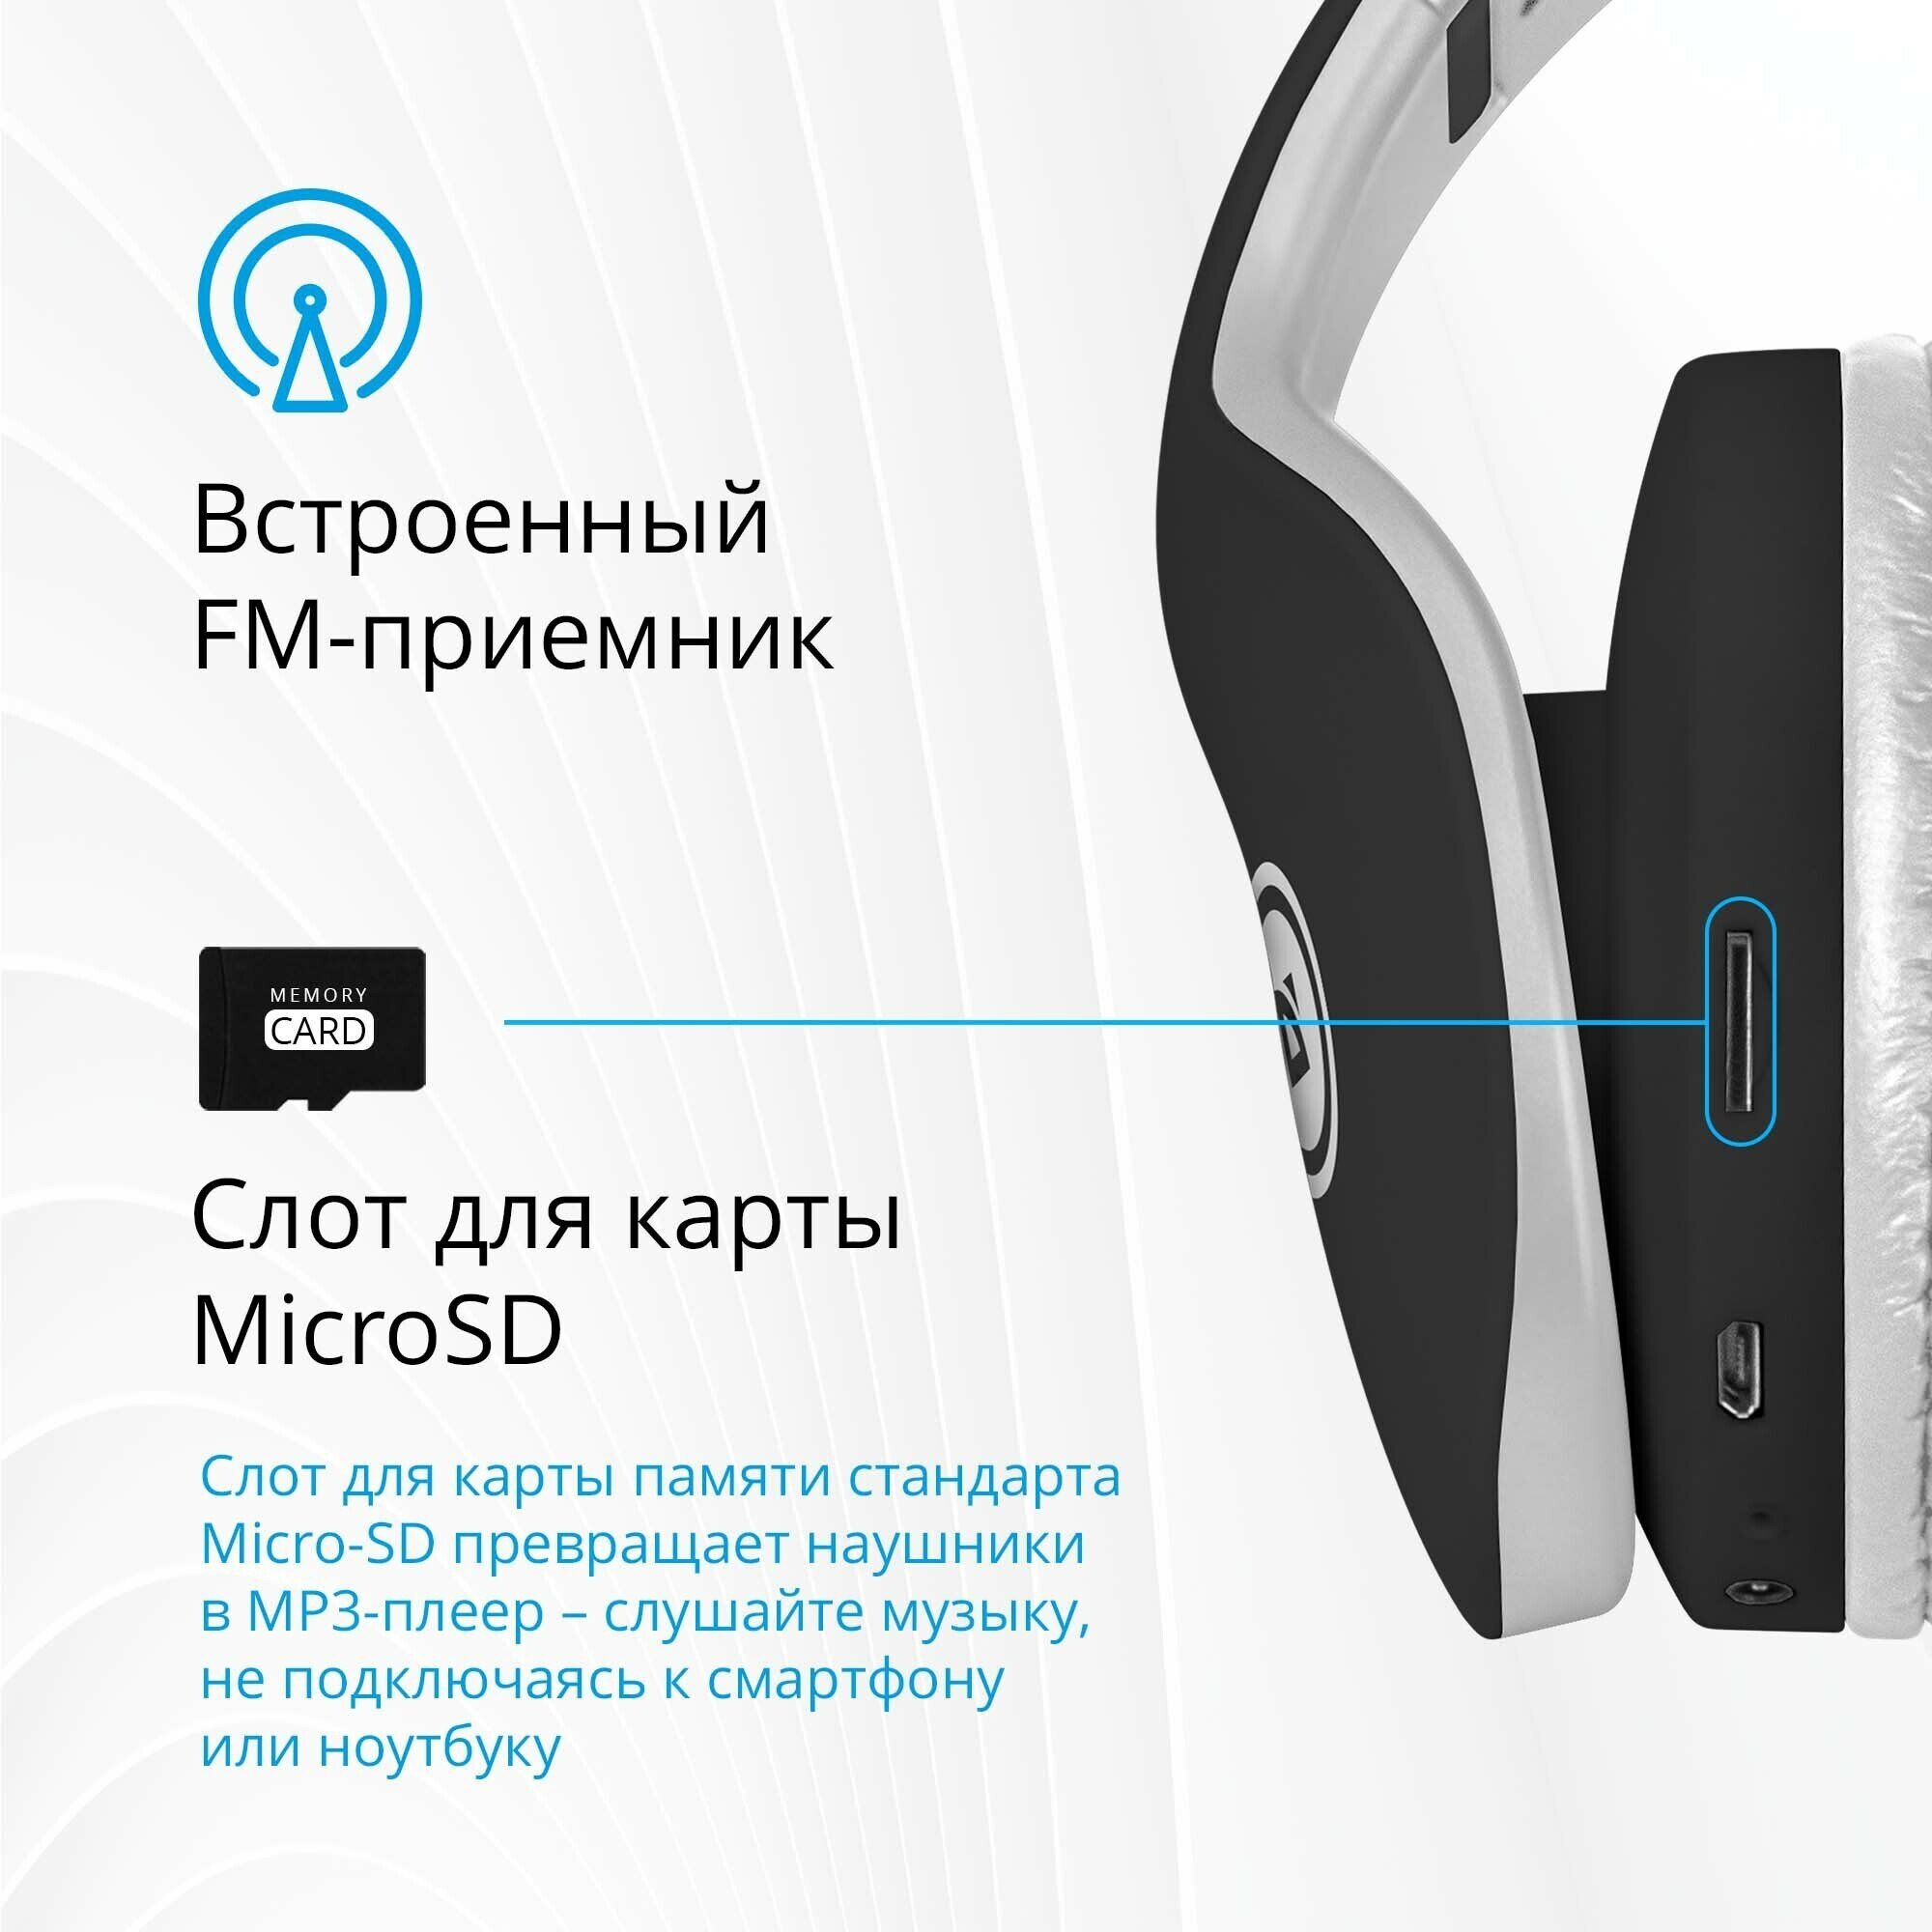 Наушники беспроводные большие Defender FreeMotion 525, Bluetooth 5.0, microSD, MP3 плеер FM радио, AUX кабель, черный + белый